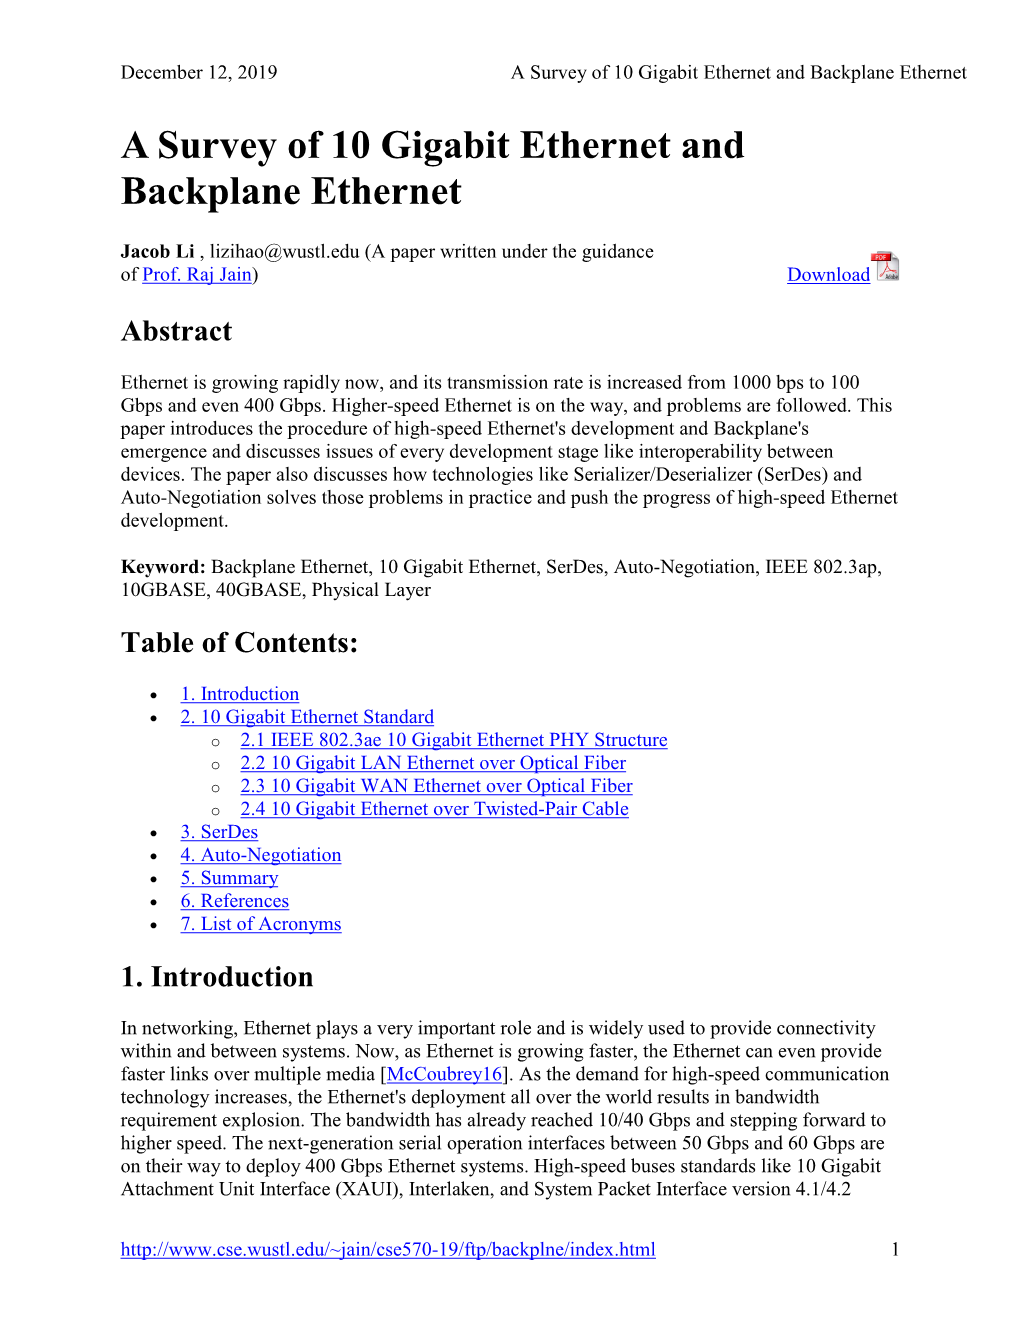 A Survey of 10 Gigabit Ethernet and Backplane Ethernet